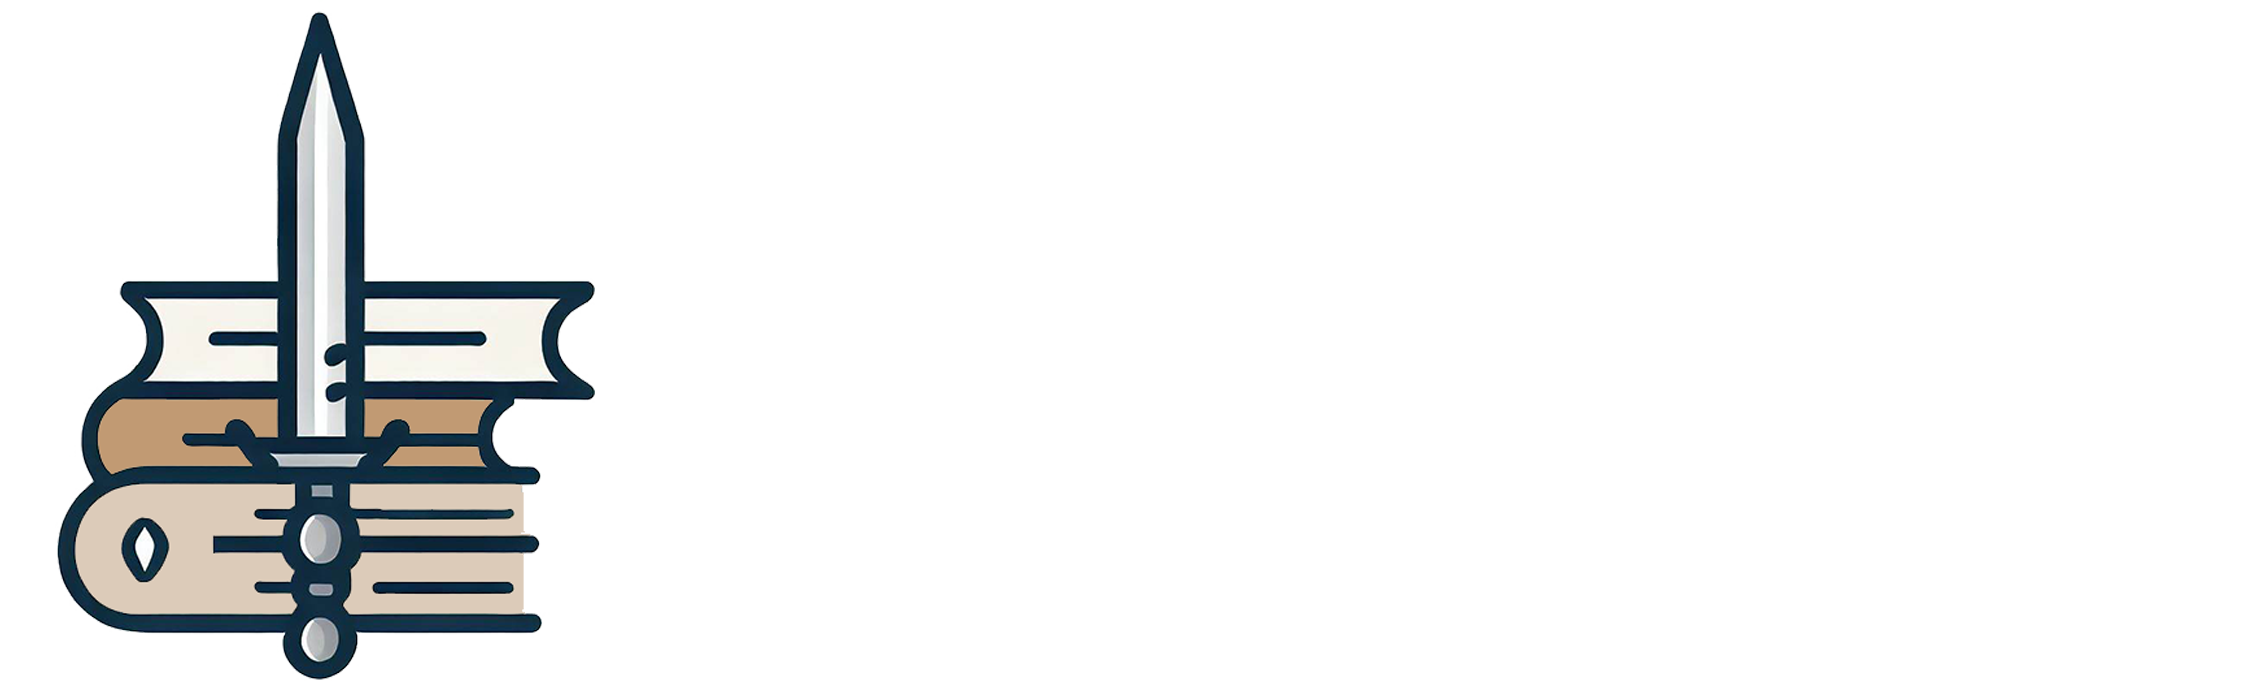 Logo Blog de literatura - La Buhardilla del Pícaro